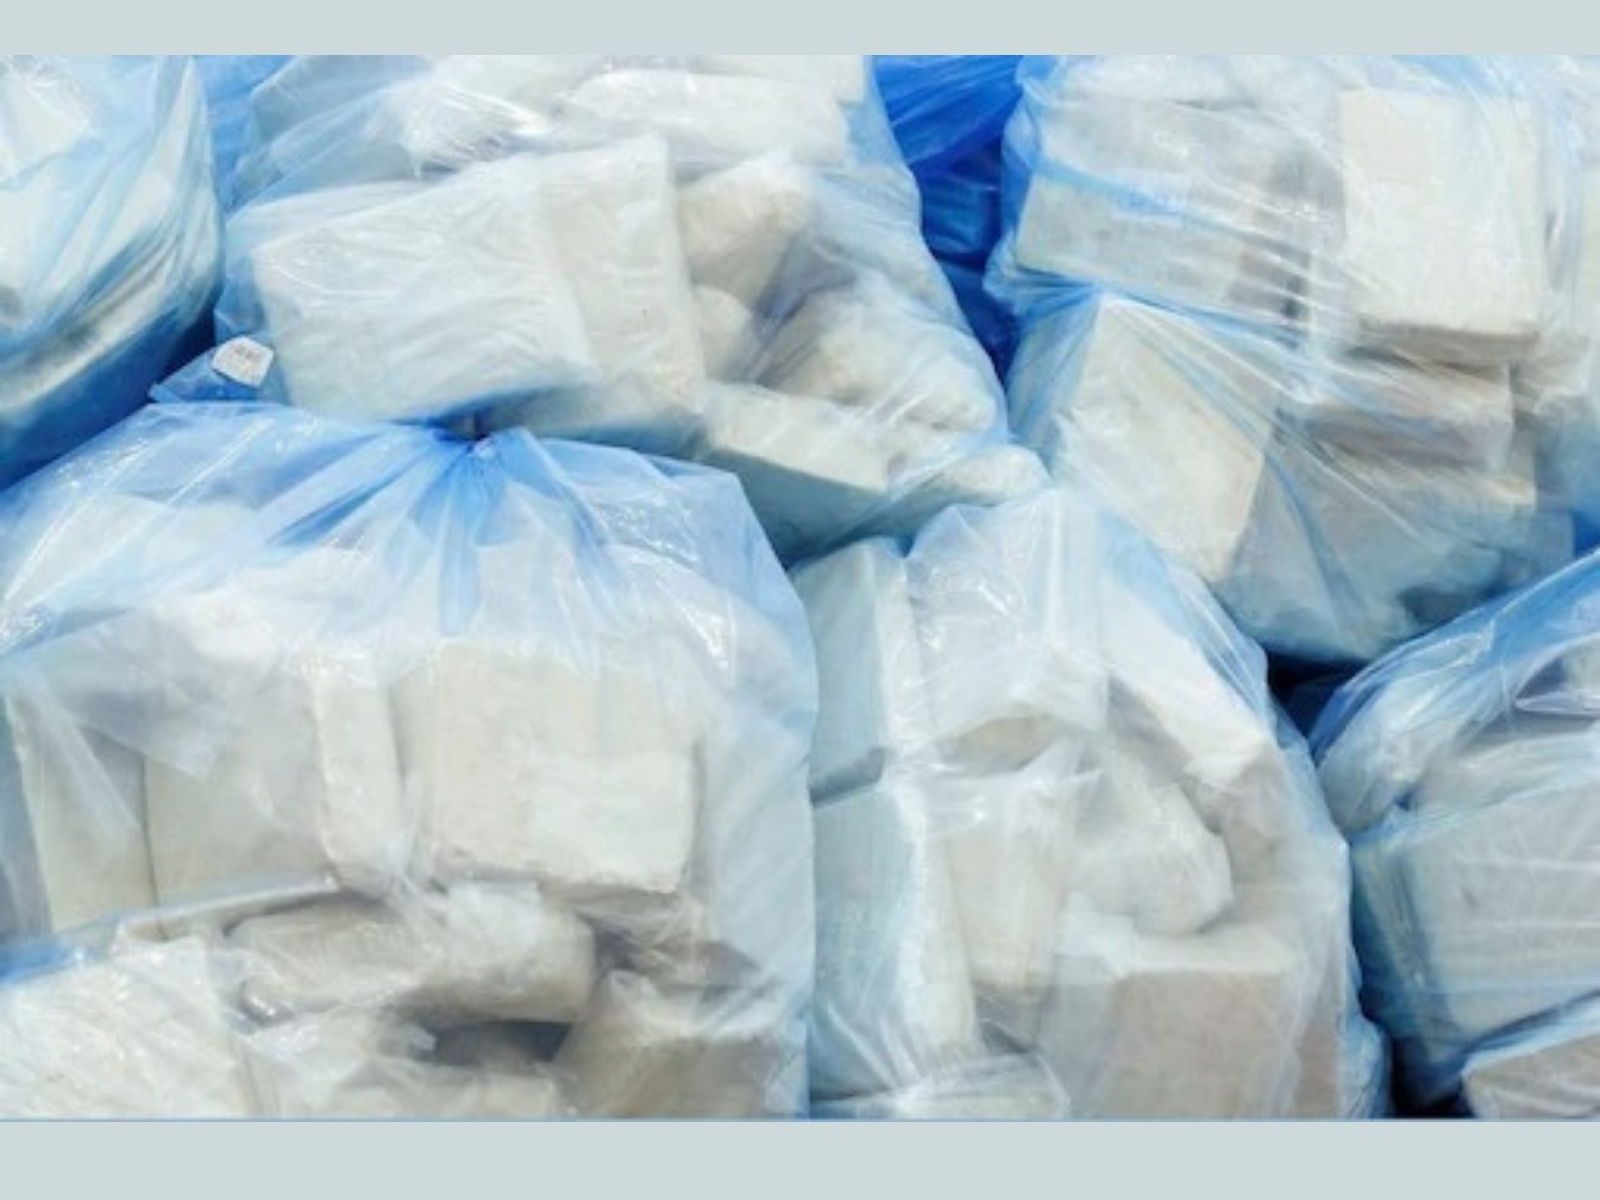 400 ਕਰੋੜ ਰੁਪਏ (Rs 400 crore) ਦੀ ਕੀਮਤ ਦੀ 77 ਕਿਲੋਗ੍ਰਾਮ ਹੈਰੋਇਨ (77 kg heroin ) ਸਮੇਤ ਚਾਲਕ ਦਲ ਦੇ 6 ਮੈਂਬਰਾਂ ਨੂੰ ਗ੍ਰਿਫਤਾਰ ਕੀਤਾ ਗਿਆ ਹੈ। (Representational image: Reuters)